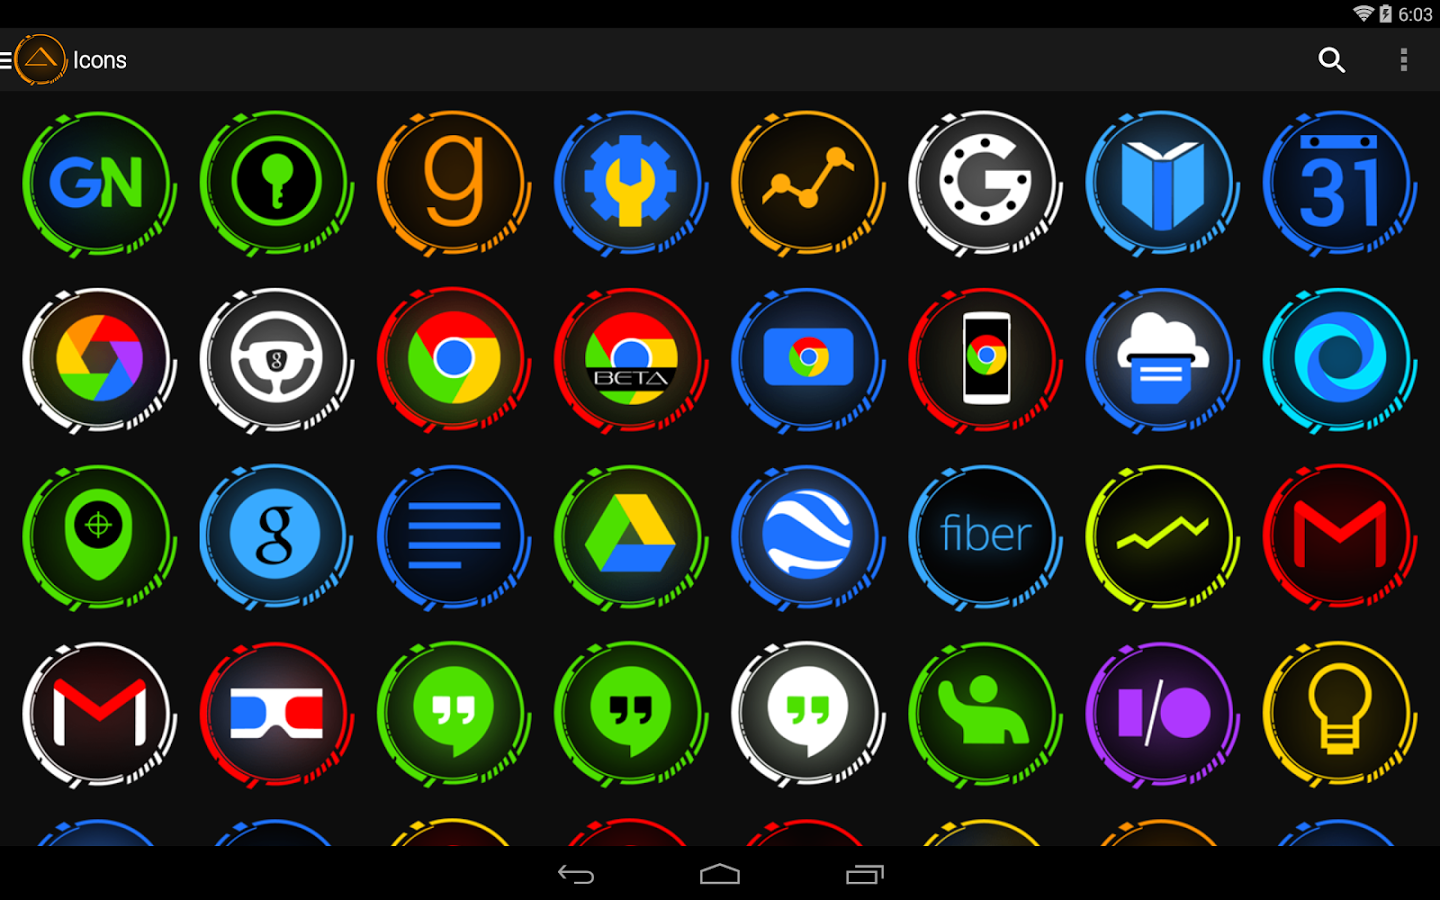 Андроид apk full. Иконка андроид. Иконки для приложений. Иконки приложений для андроид. Красивые значки для приложений.